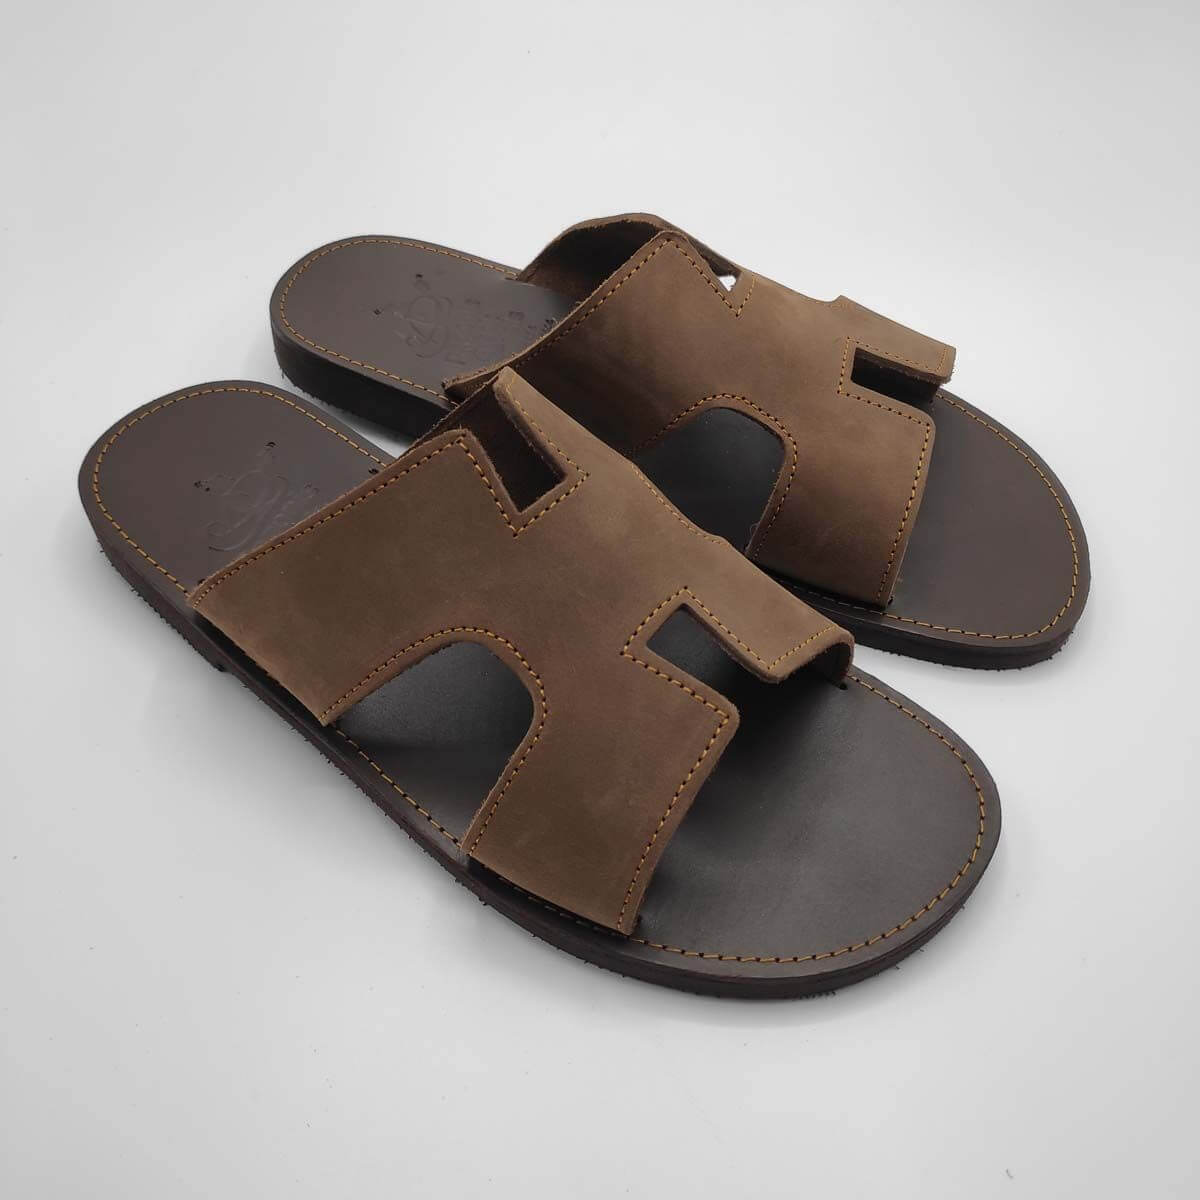 Mens Slides - Hermes Men Leather Slides Leather Sandals | Pagonis Greek ...